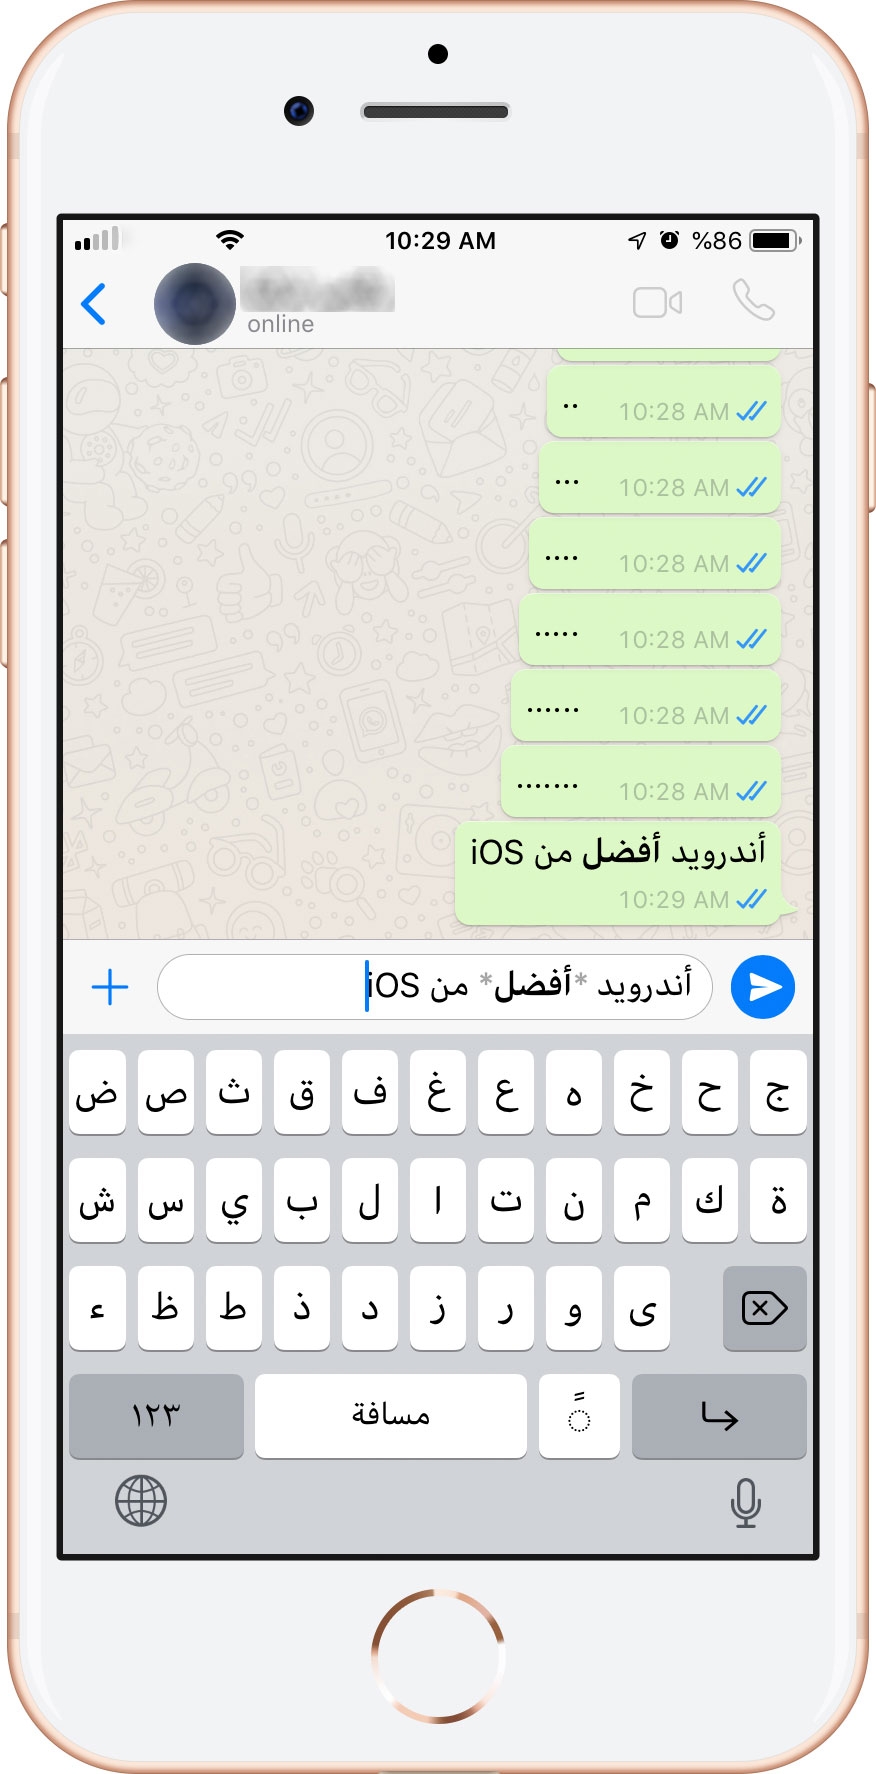 Com personalitzar l'enllaç del grup de WhatsApp mitjançant icones i símbols personalitzats